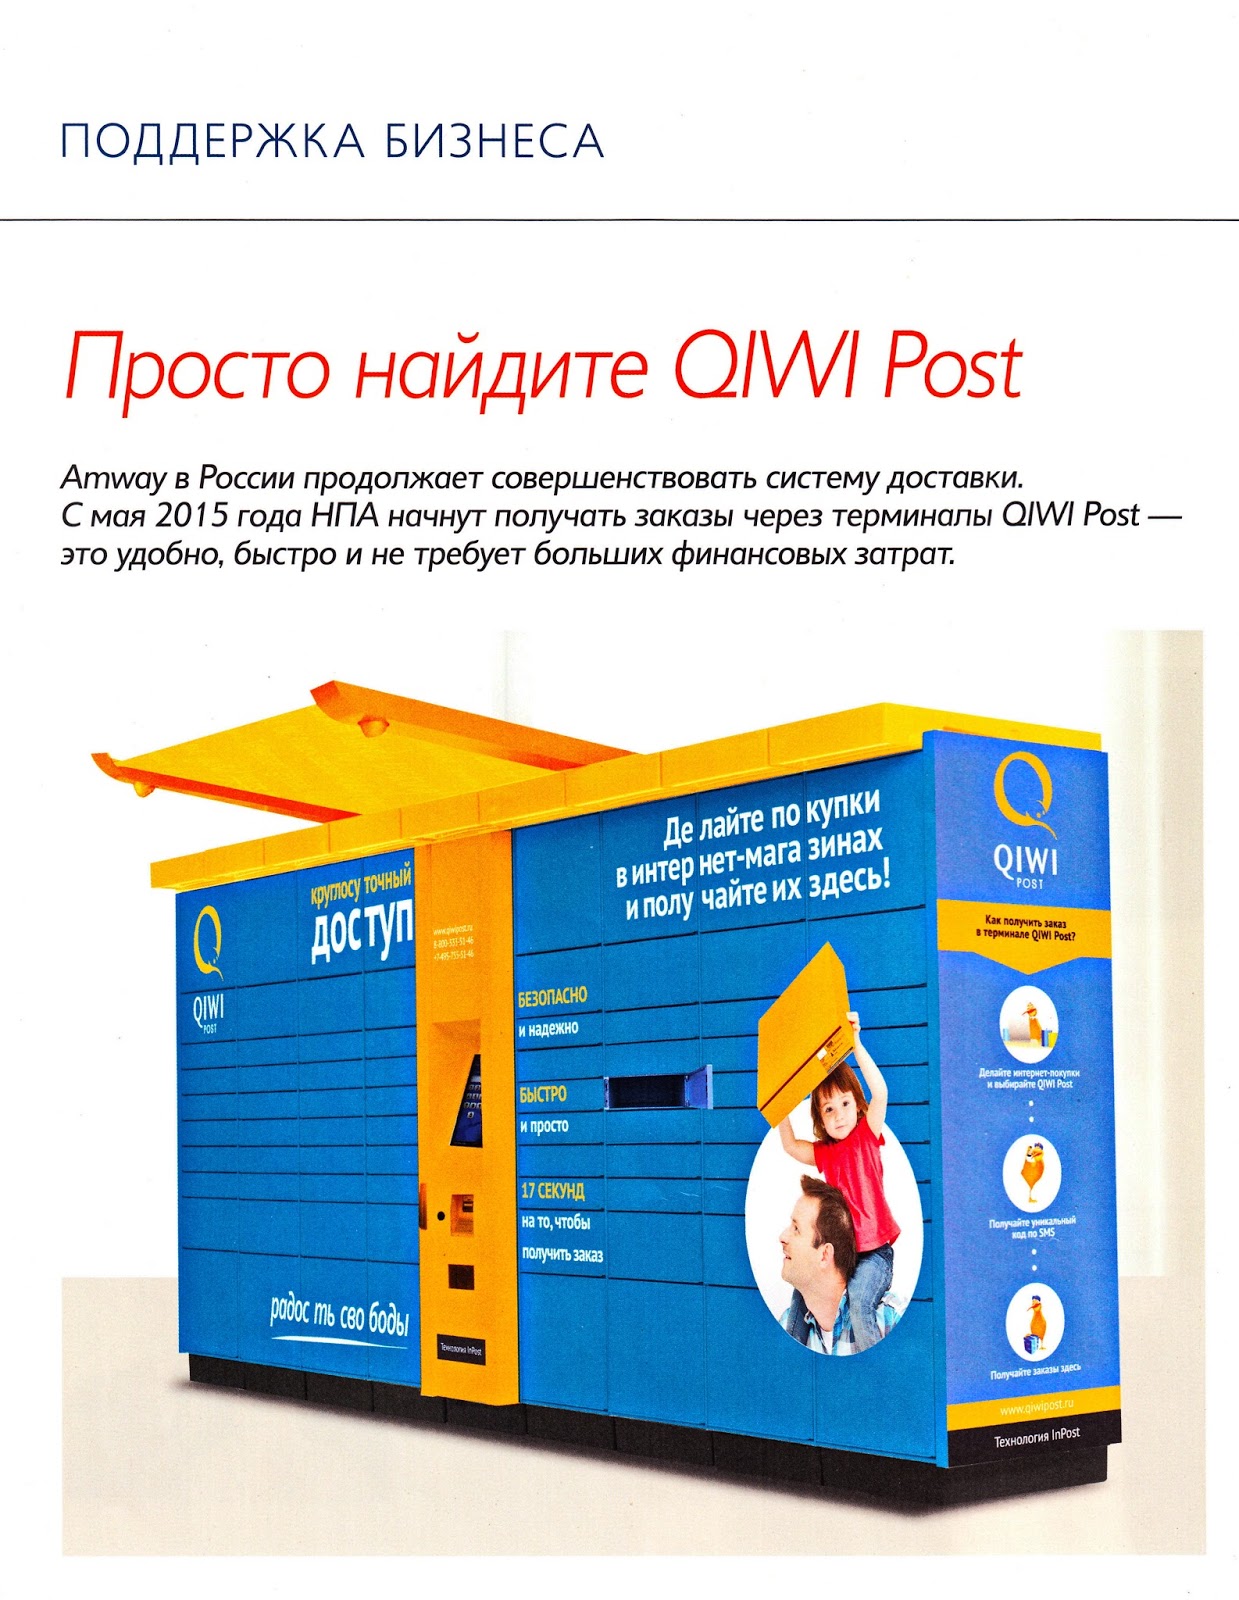 Как получить заказ в 5post. QIWI Post. Пост как заказать. 5 Post как получить заказ. Под систему доставкой заказать.